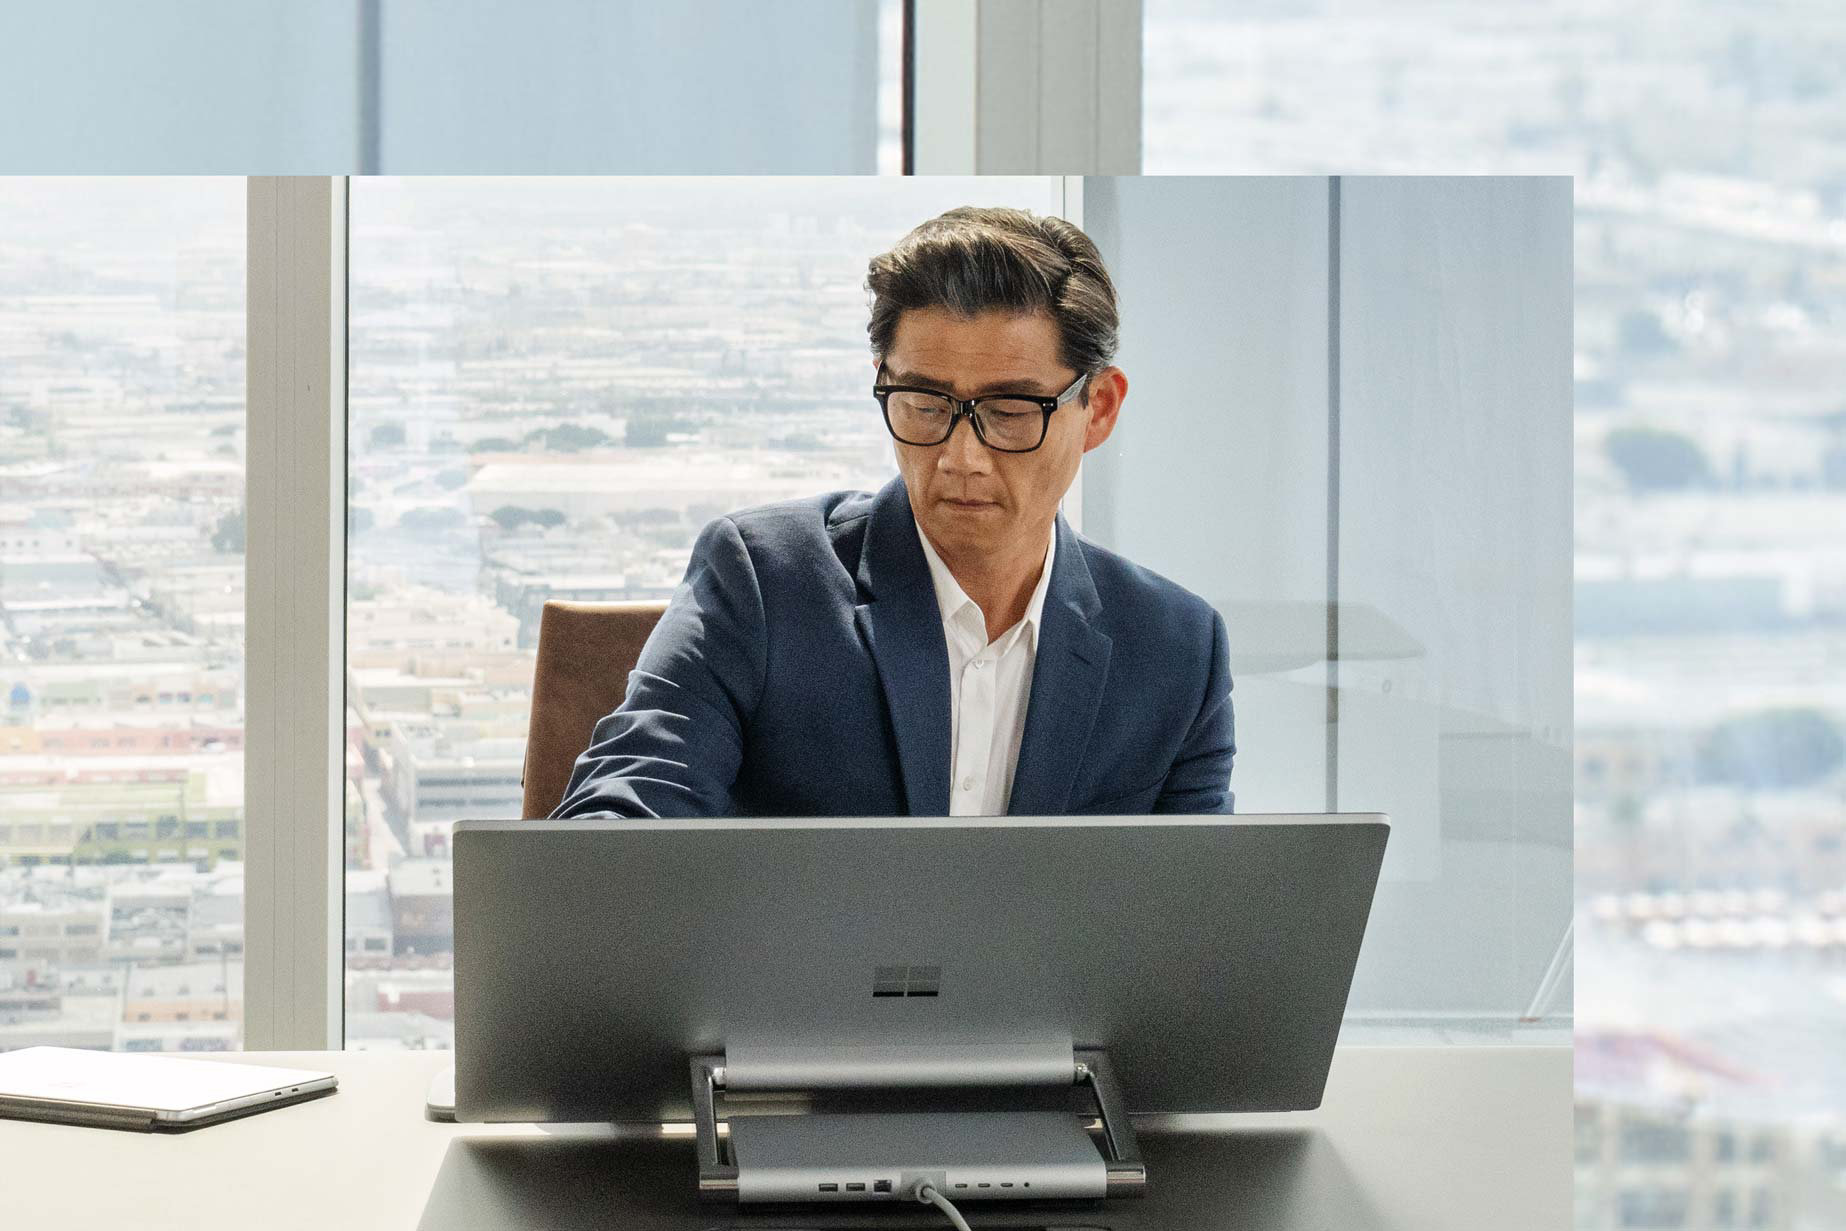 Mężczyzna siedzi przy swoim Surface Studio 2+ przed oknem przedstawiającym kilka miast.